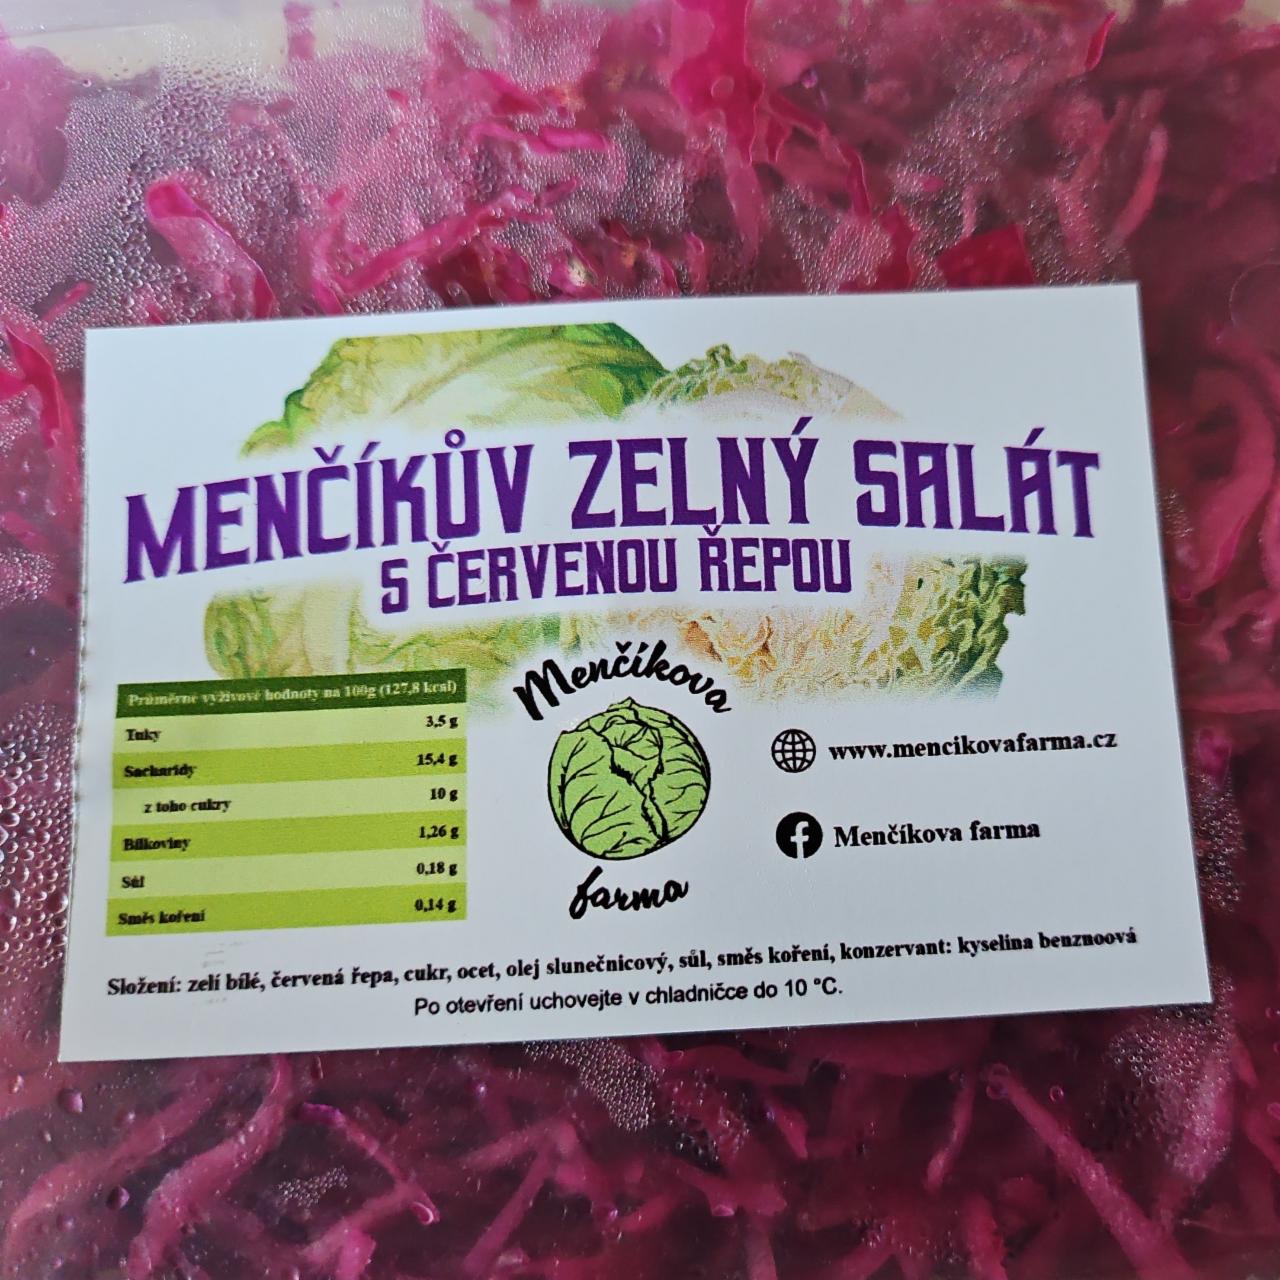 Fotografie - Menčíkův zelný salát s červenou řepou Menčíkova farma